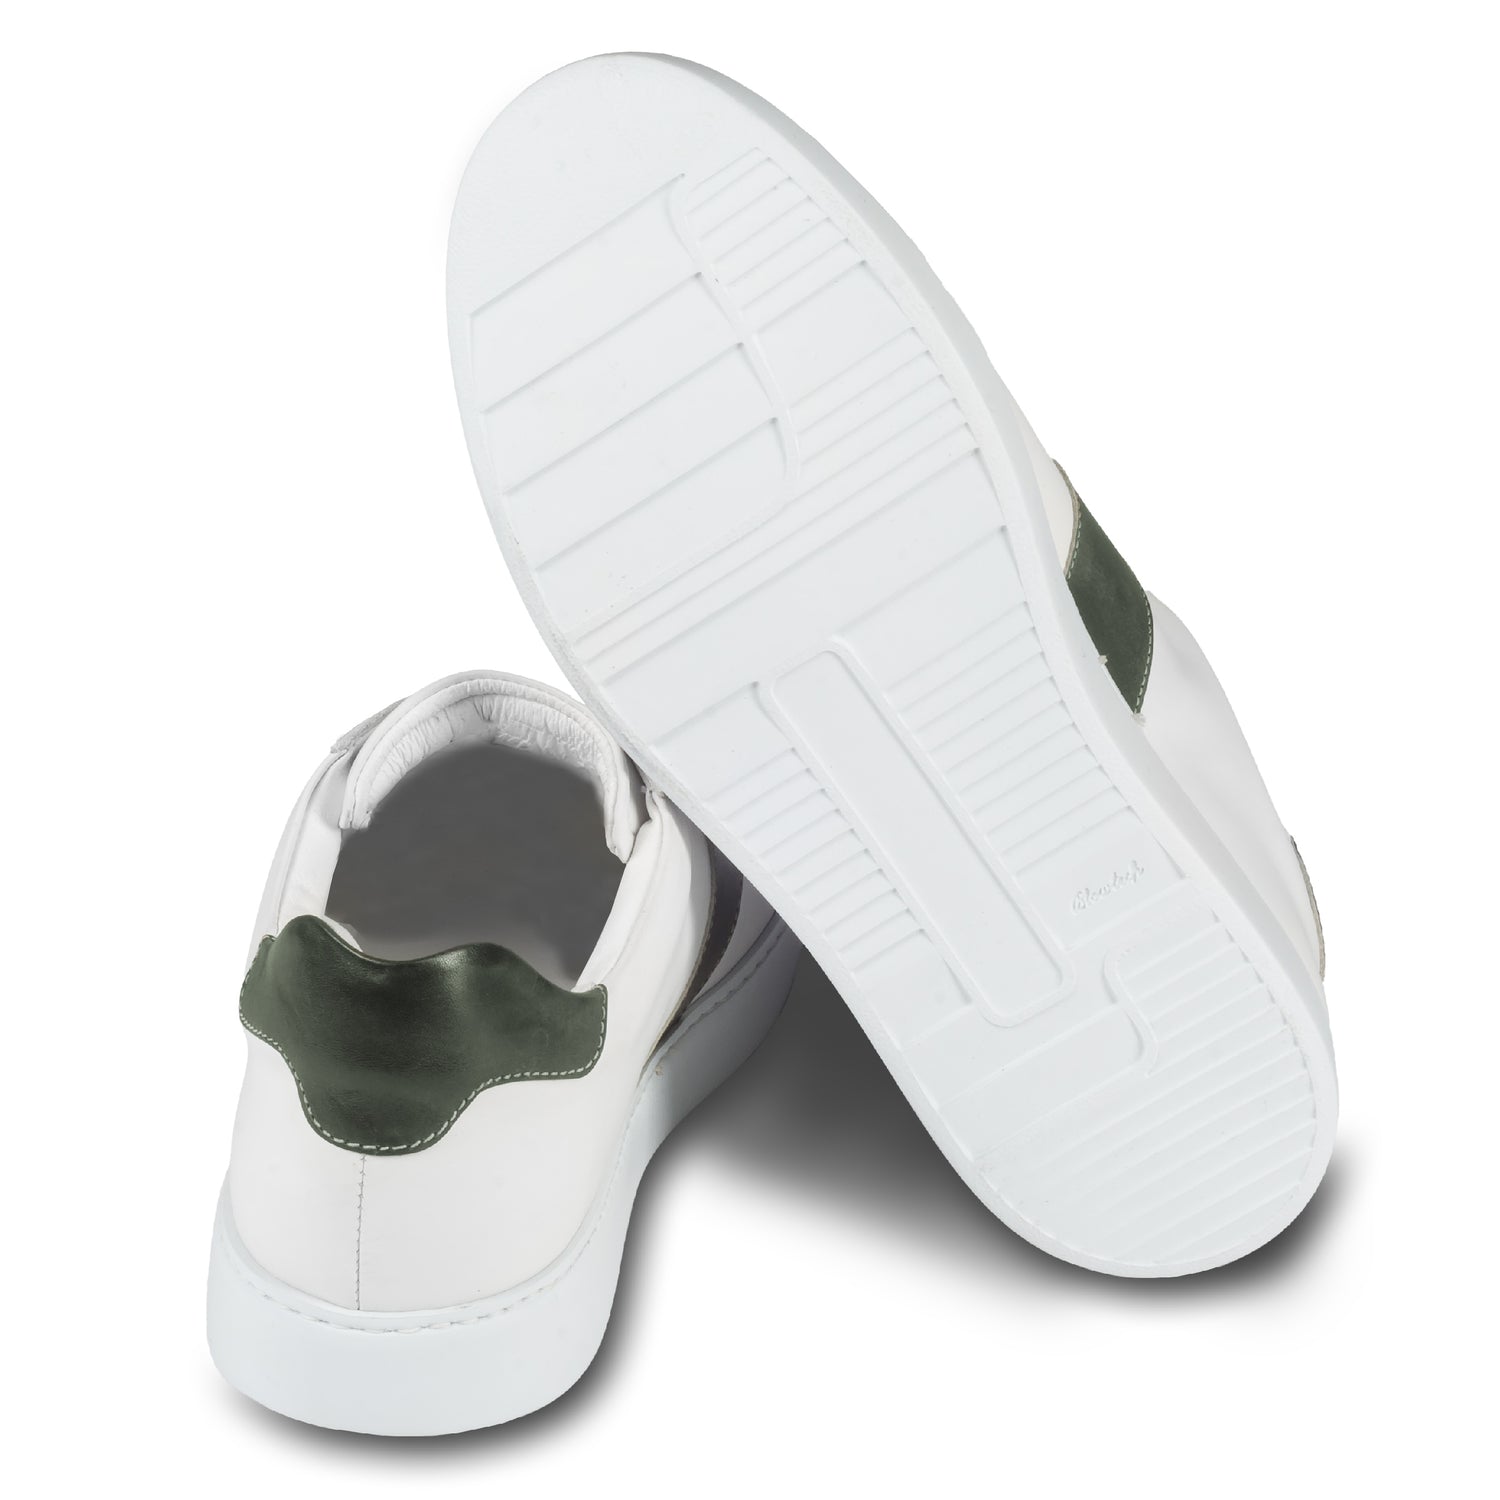 Brecos Herren Kalbsleder Sneaker in weiß mit grün. Leichte, weiße Gummisohle. Handgefertigt in Italien. Ansicht der Ferse und Sohlenunterseite. 